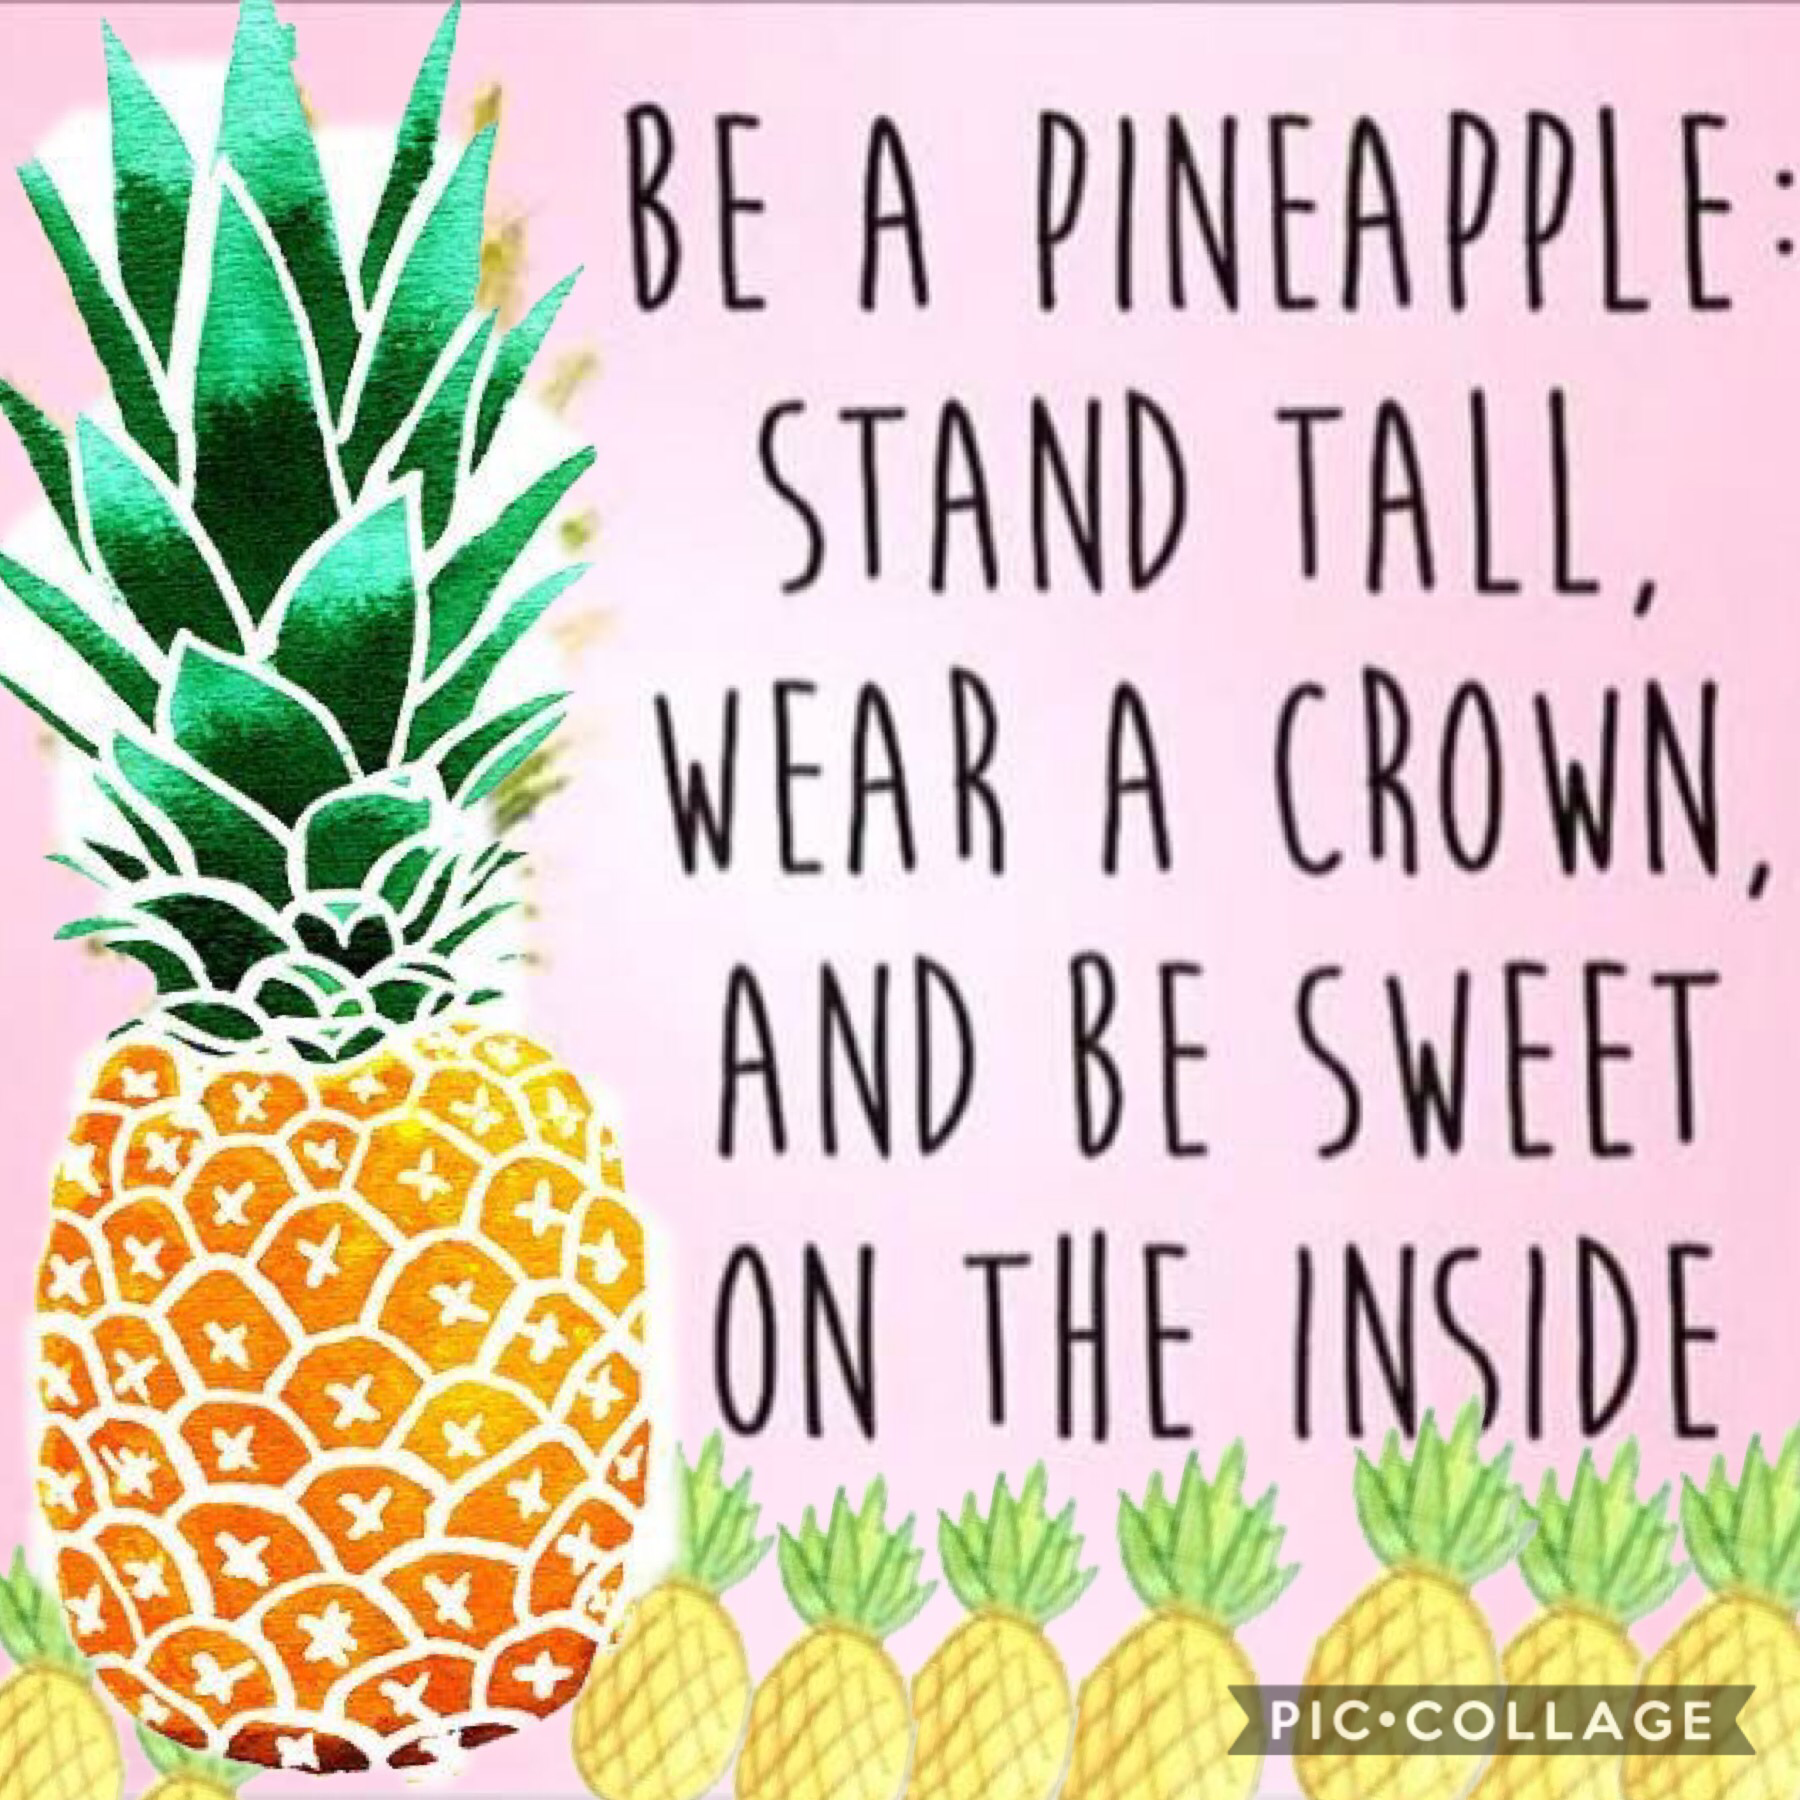 I love pineapples